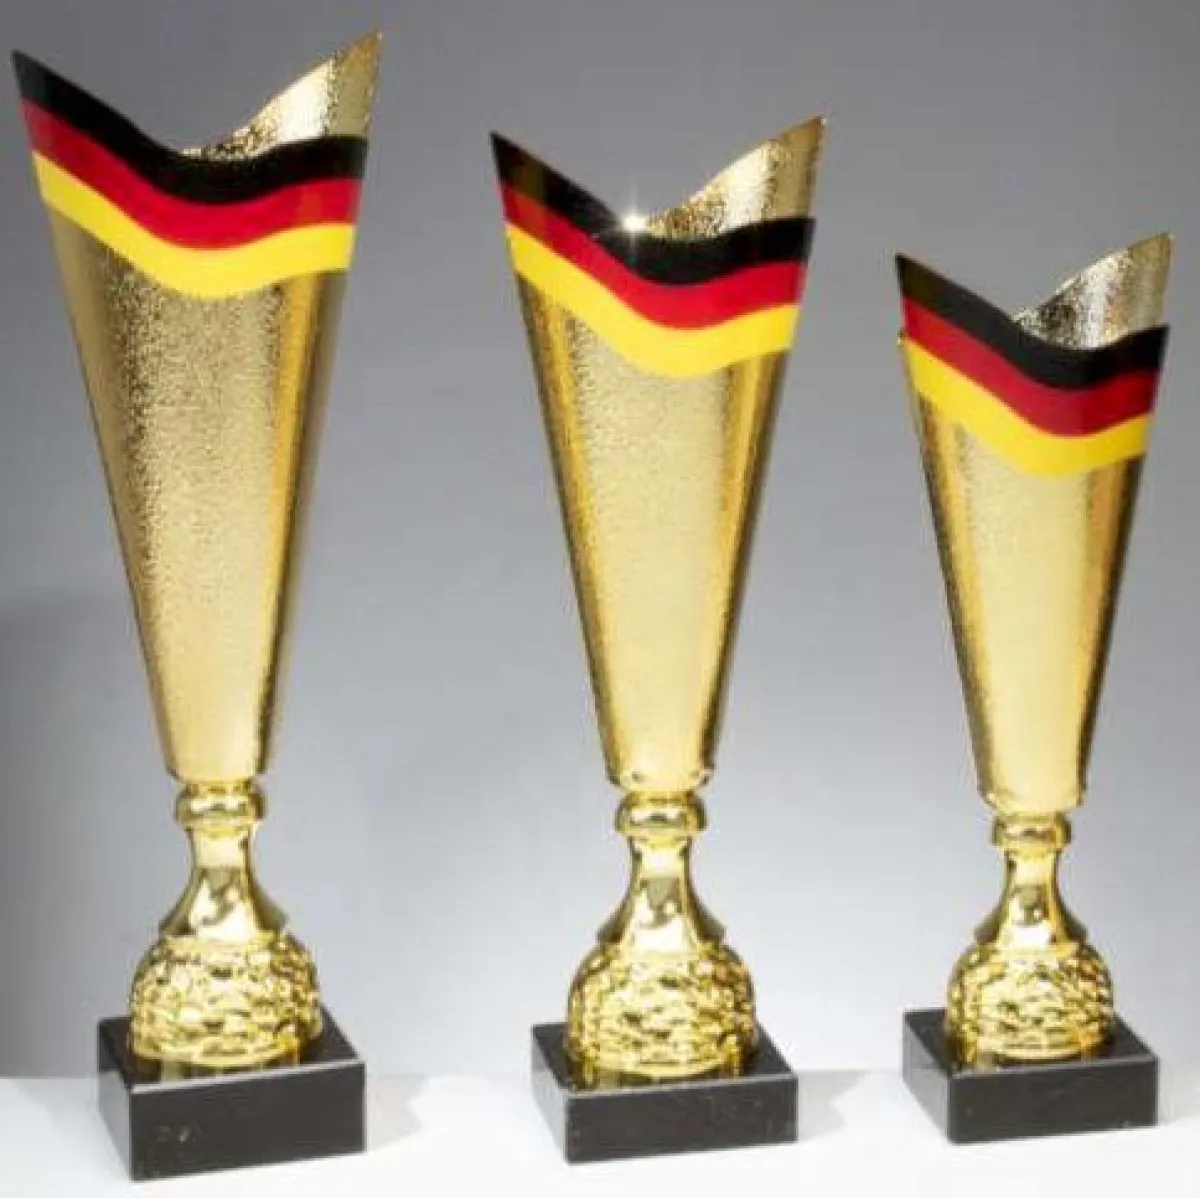 Copa de Alemania | Copa Nacional de Alemania Bandera de oro